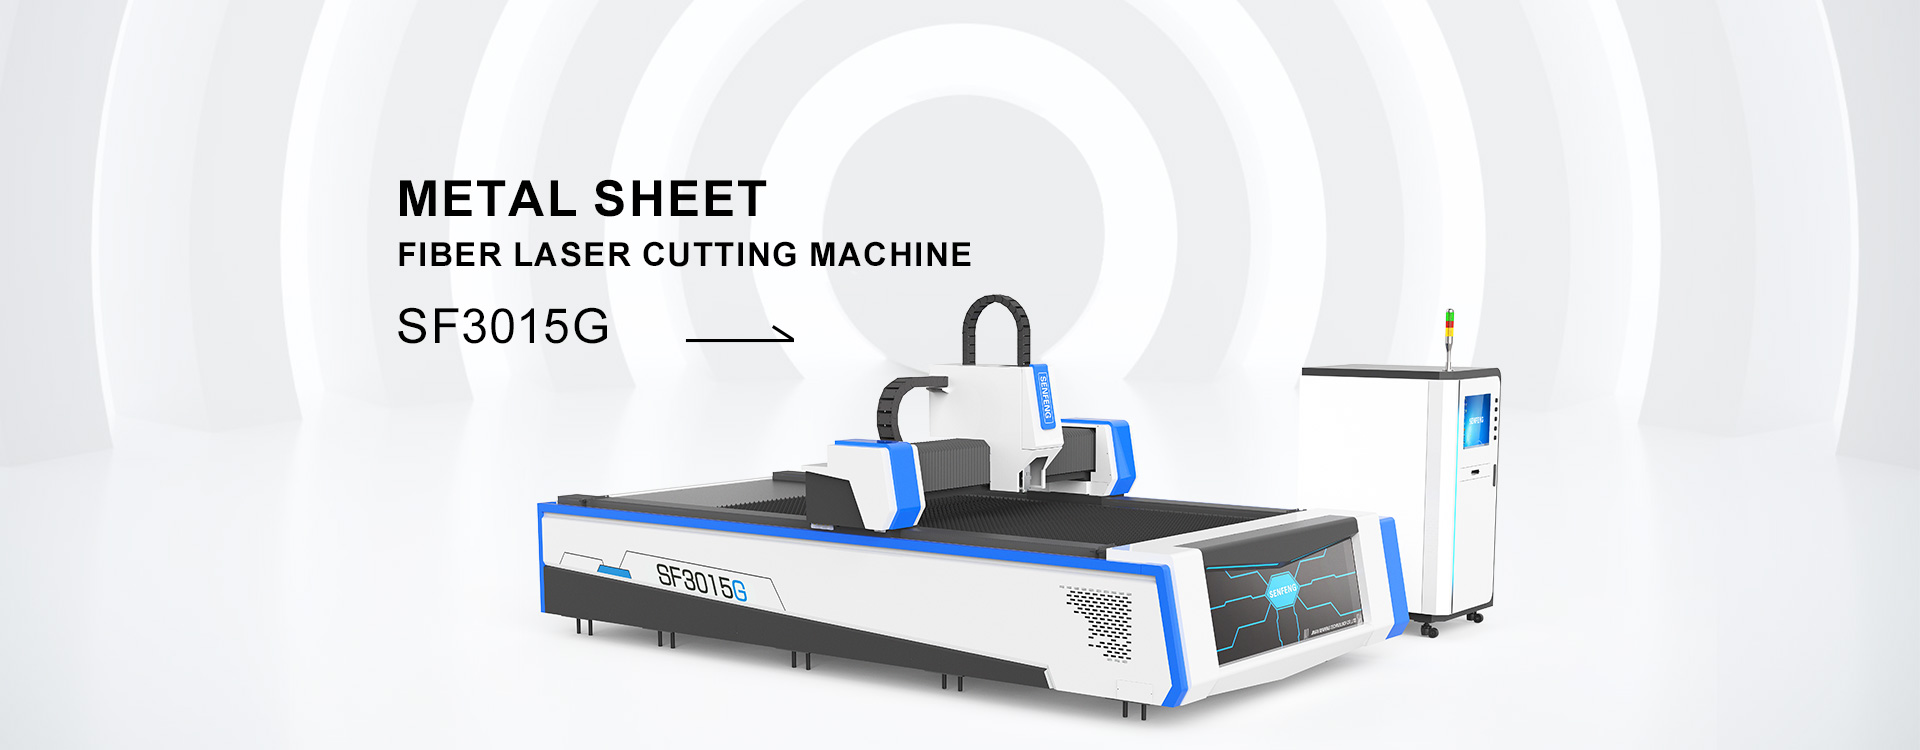 Updated steel laser cutting machine SF3015G3 